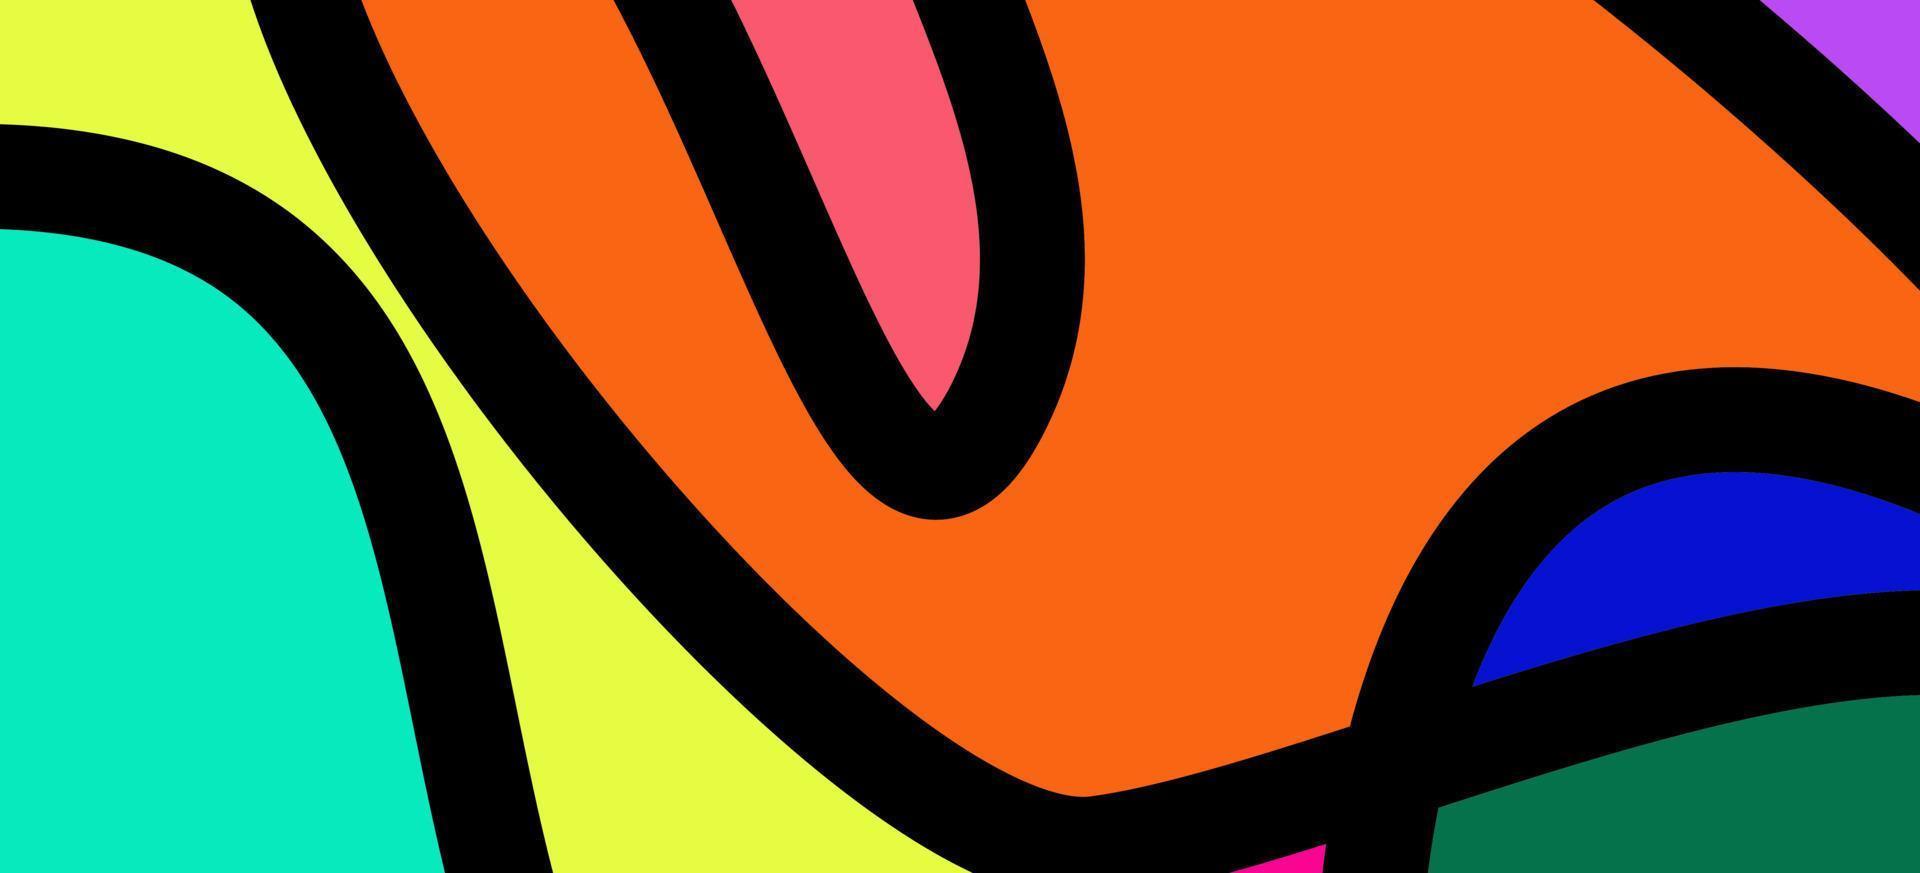 kleurrijk abstract vloeistof en meetkundig achtergrond vrij vector